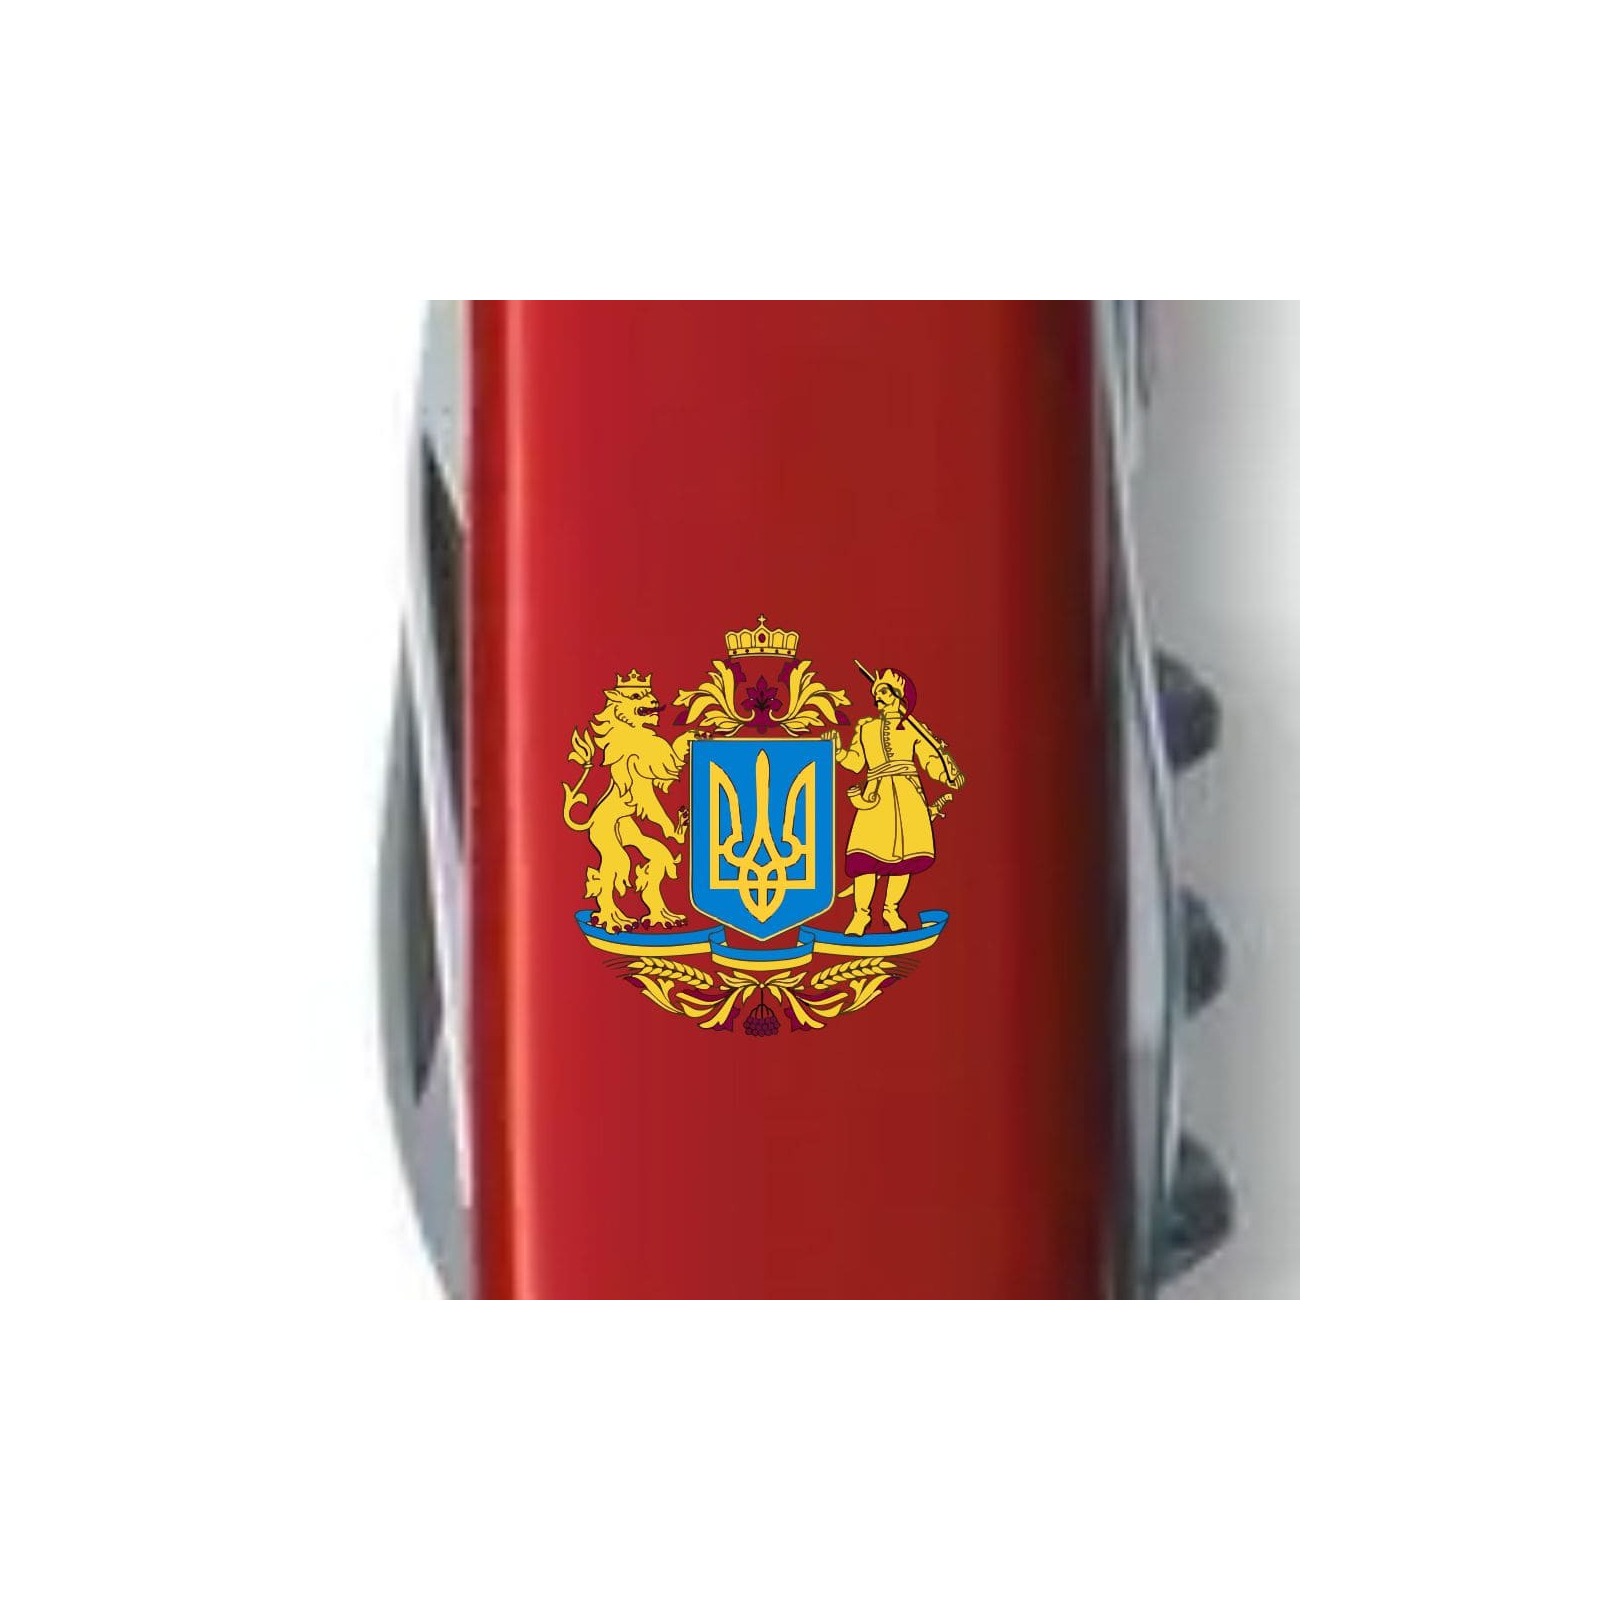 Ніж Victorinox Spartan Ukraine Red "Тризуб ЗСУ" (1.3603_T0390u) зображення 4